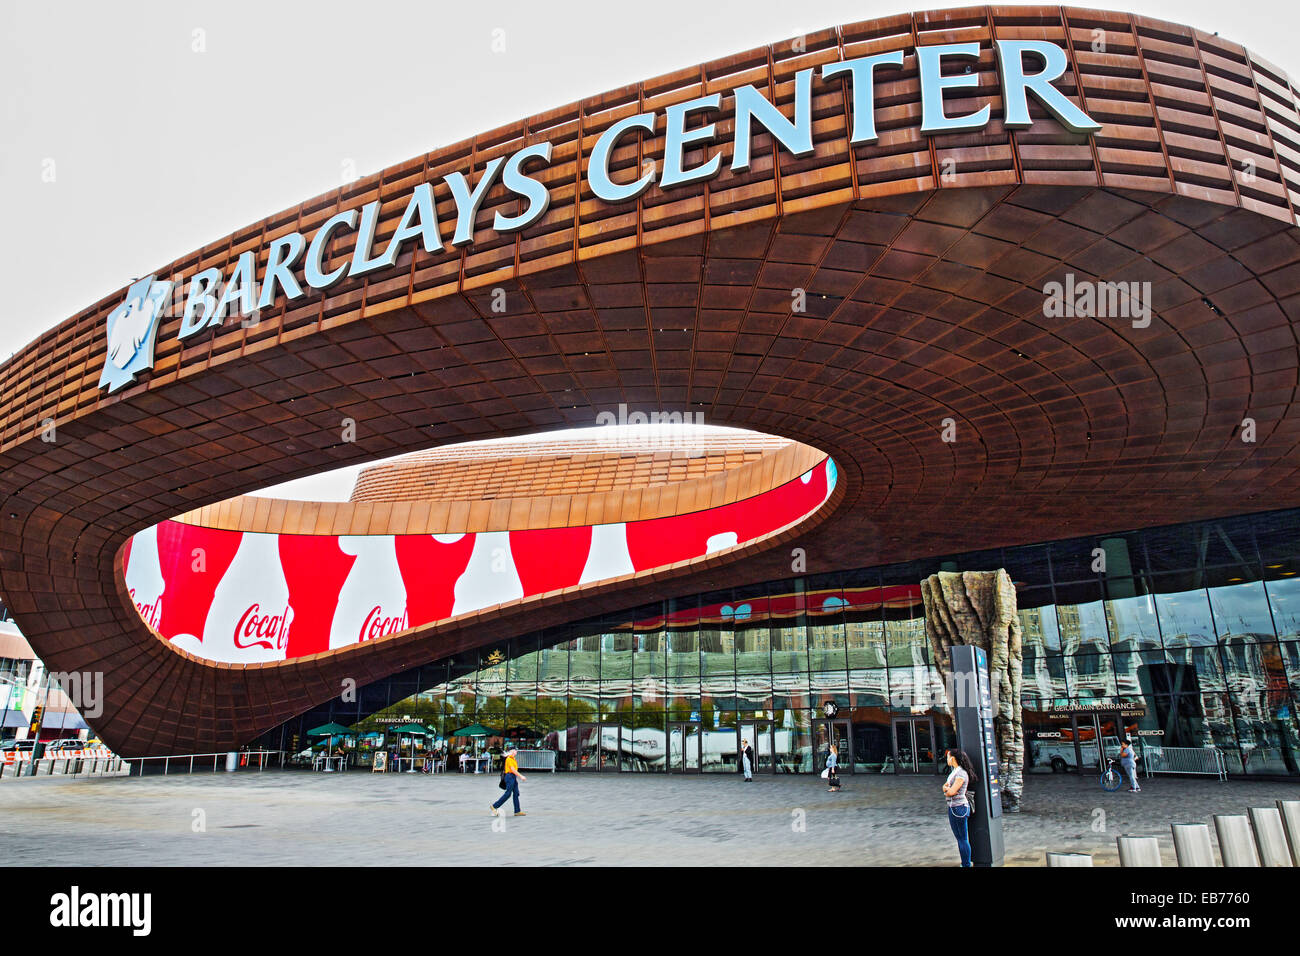 Barclays Center, Brooklyn, NY, USA, Oct. 15, 2014. Stock Photo